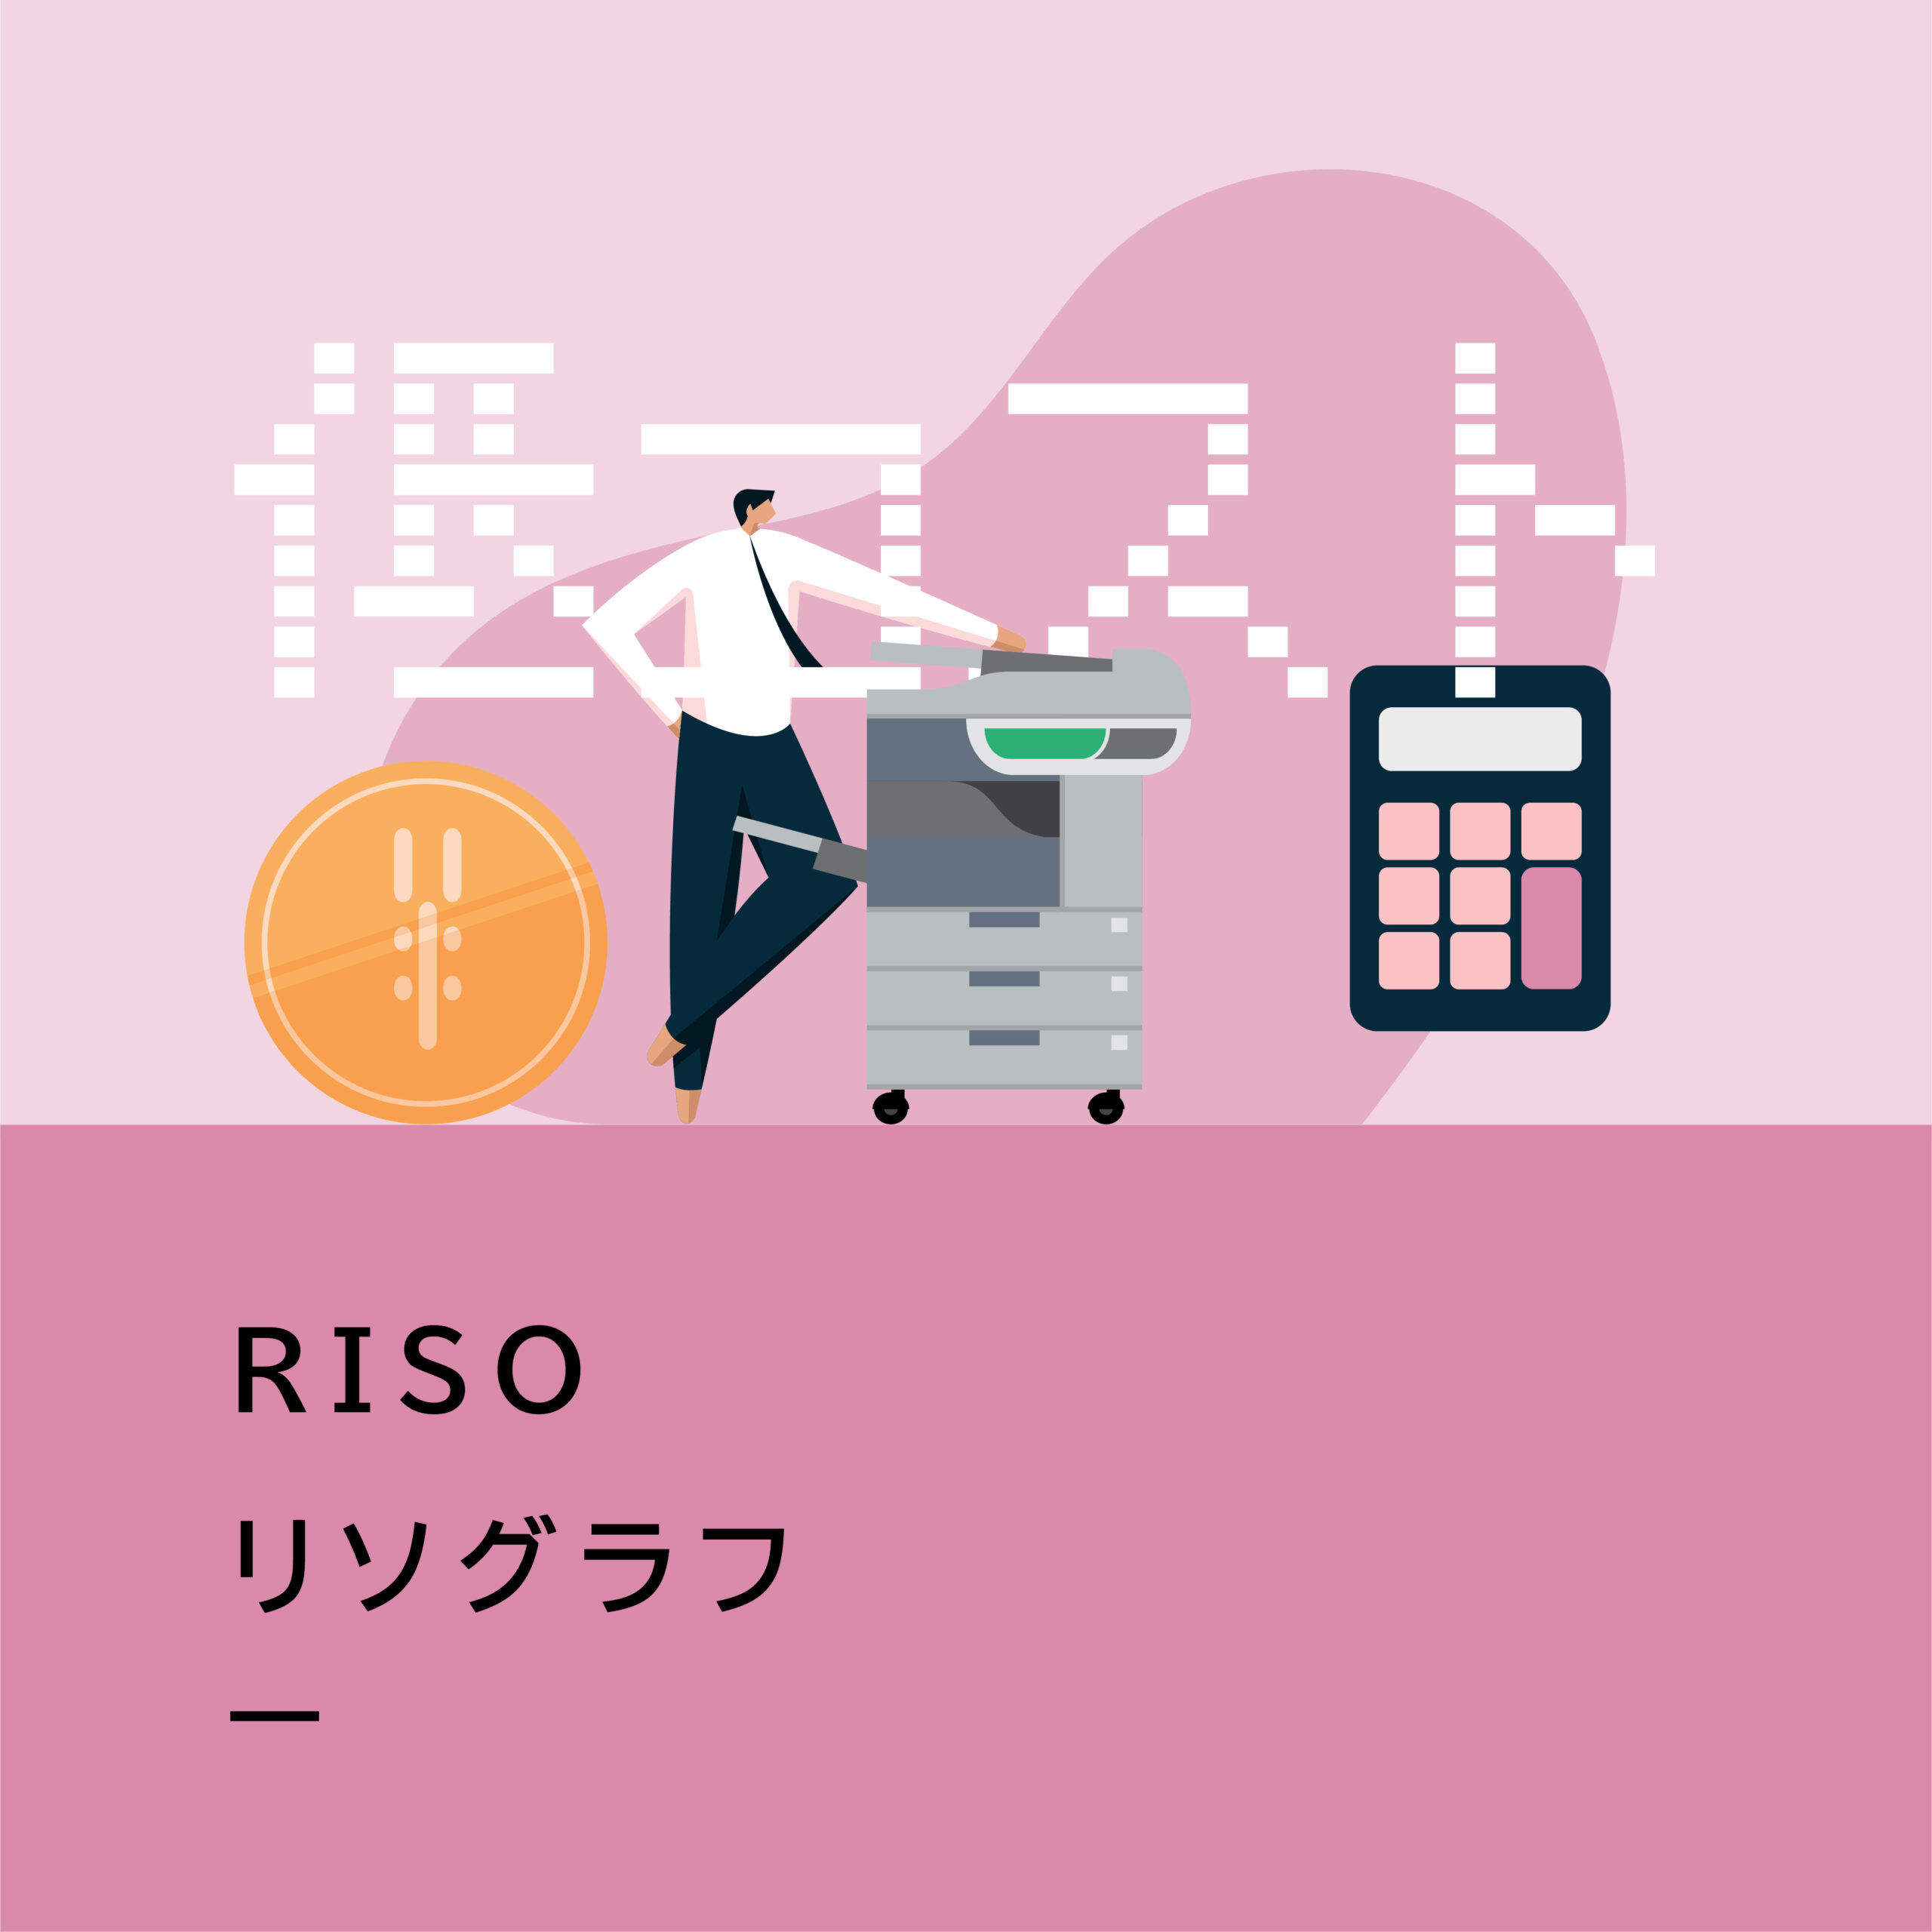 【商品紹介】RISO リソグラフ MHシリーズ／高速印刷を低コストで実現！多枚数プリントを効率よく。